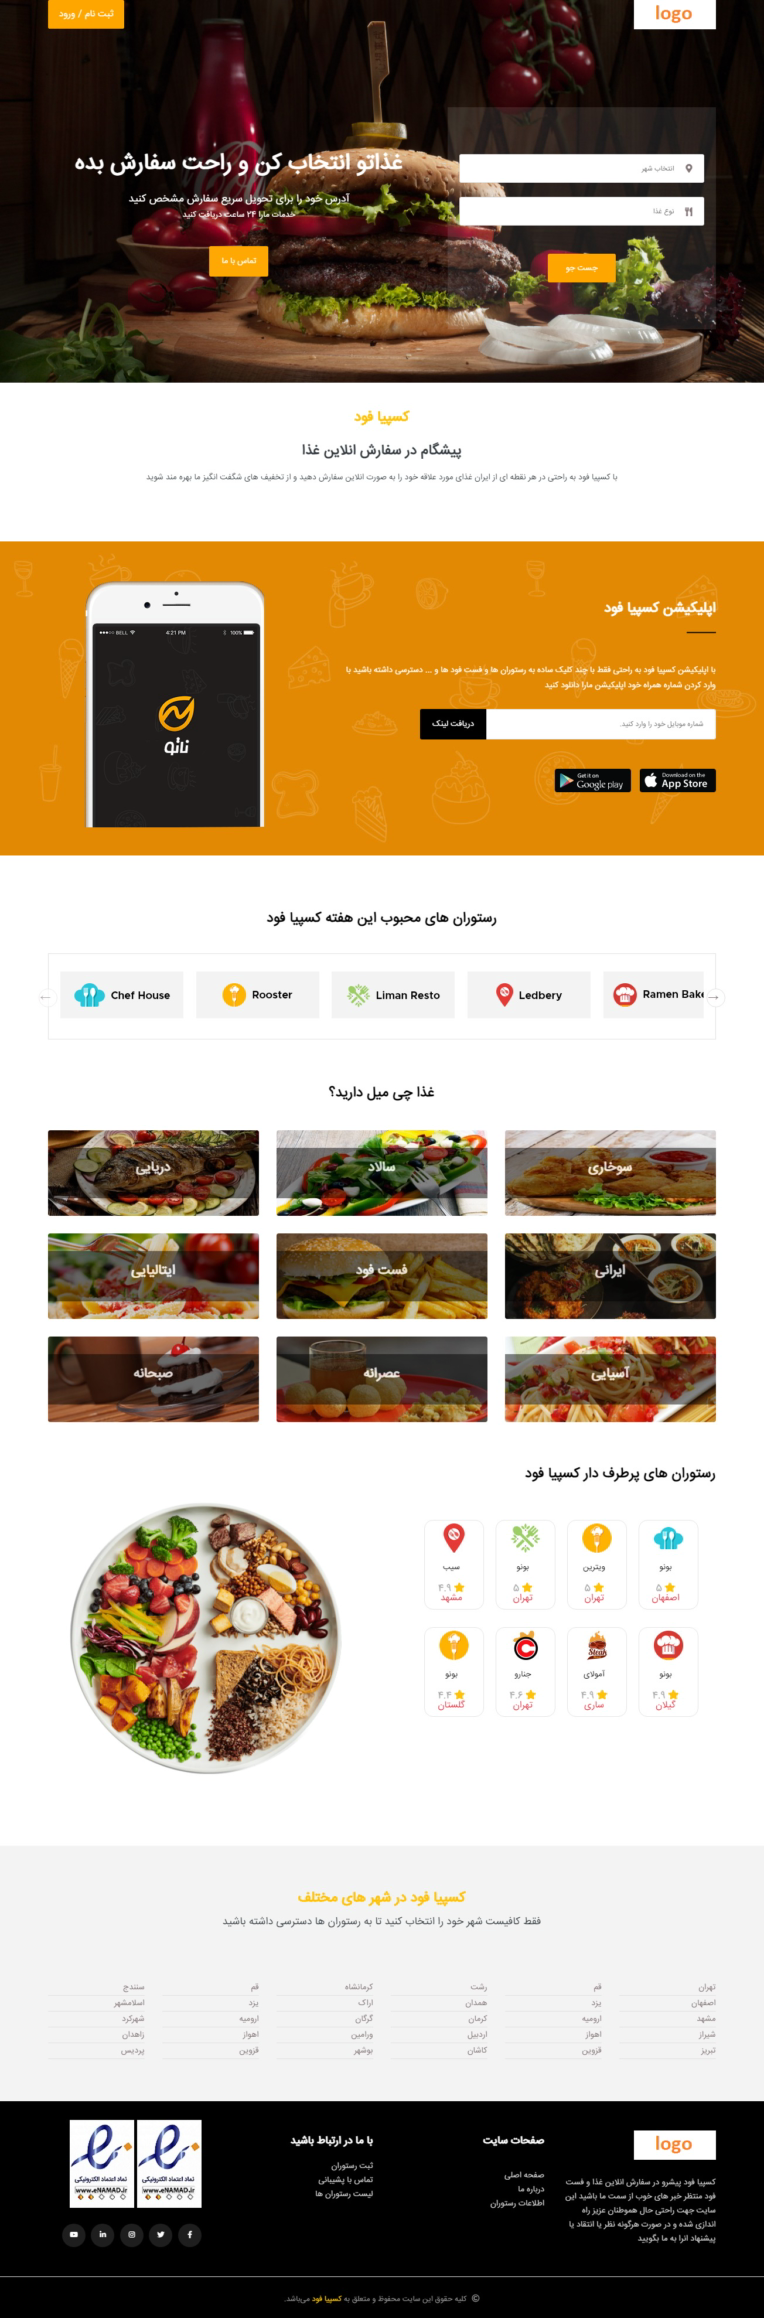 وبسایت سفارش آنلاین غذا